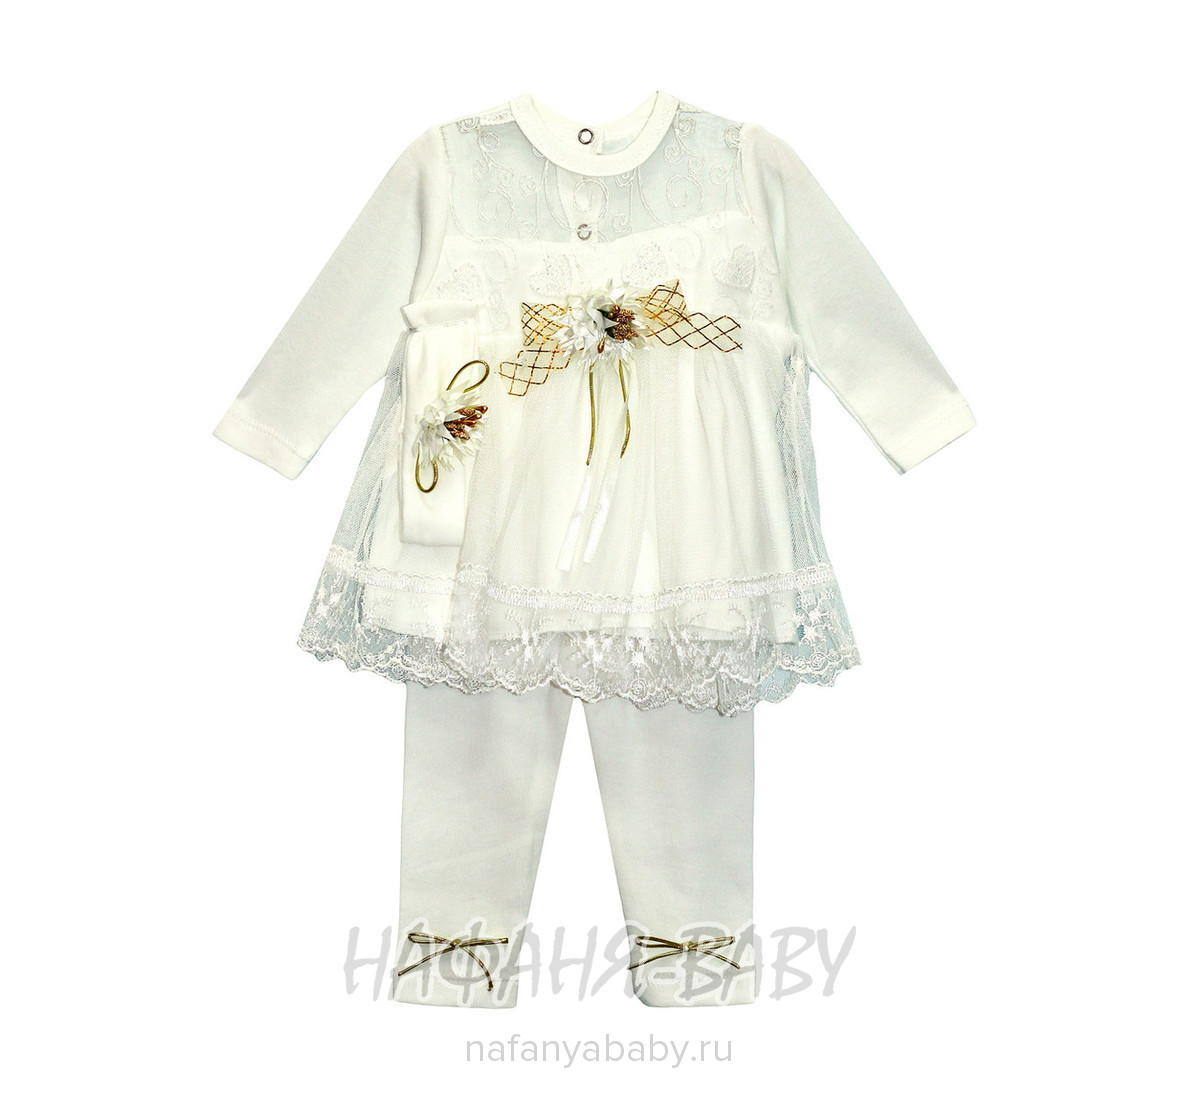 Детский костюм для новорожденных FINDIK арт: 61019, 0-12 мес, оптом Турция